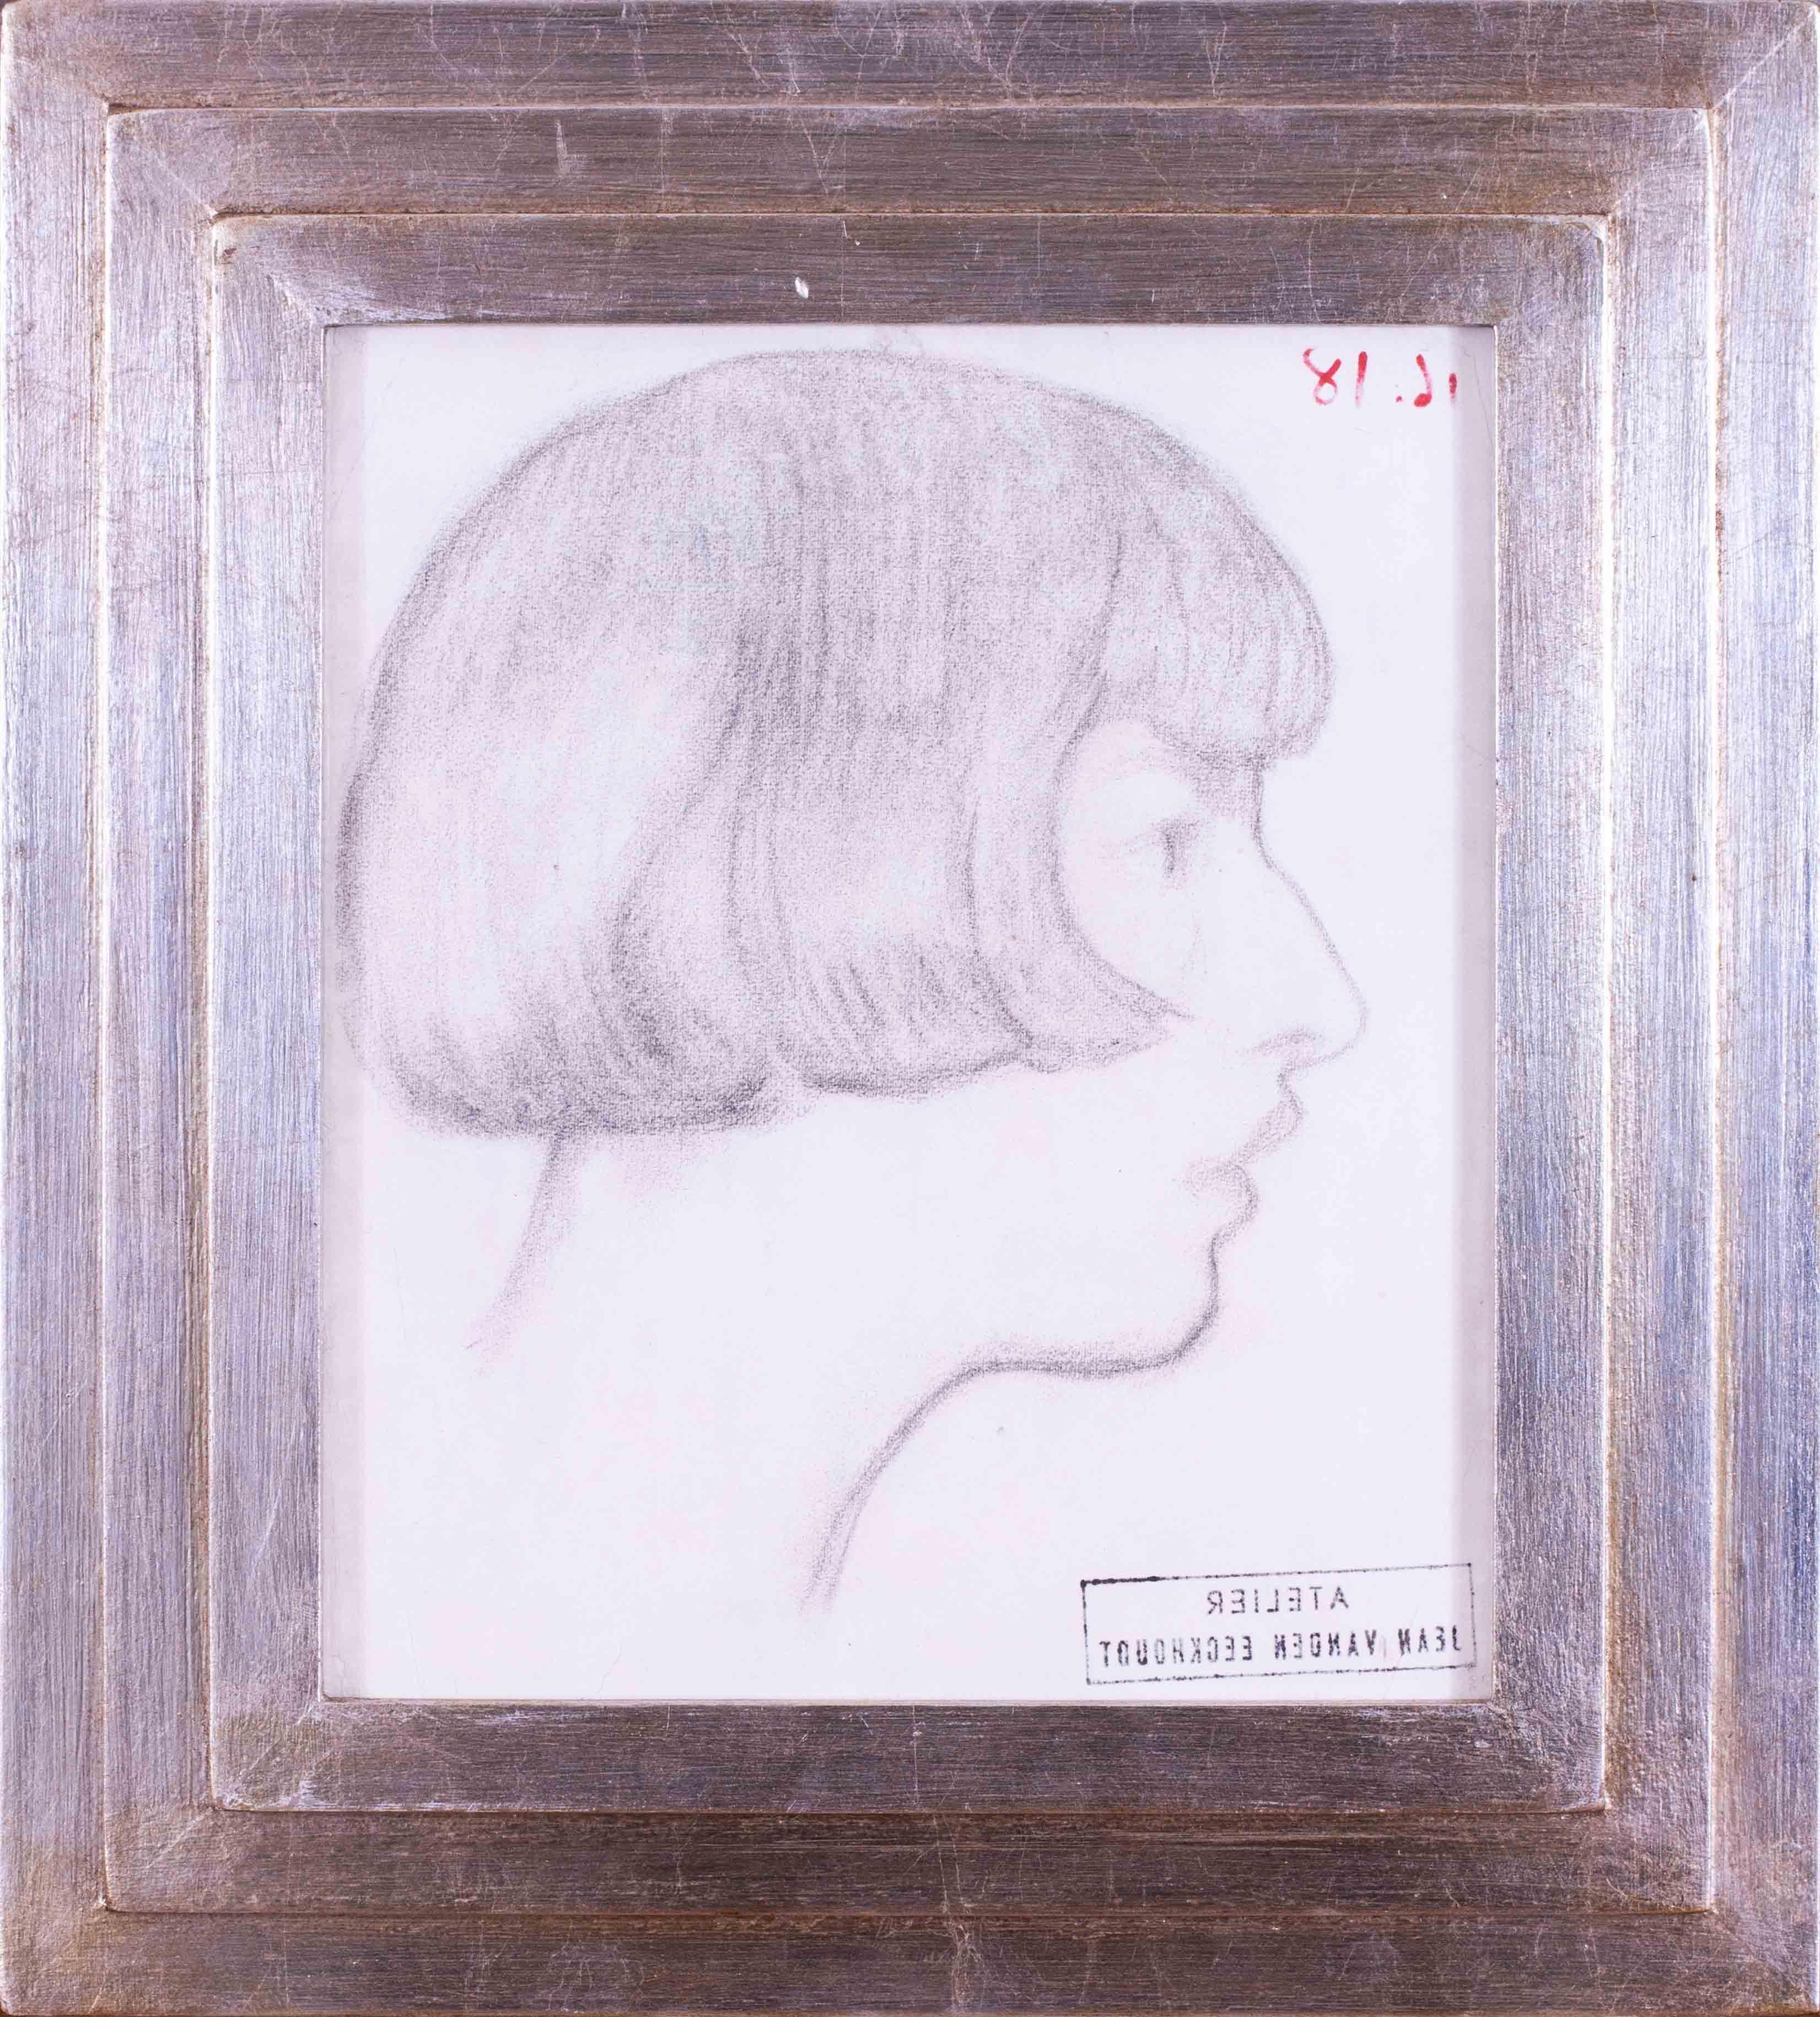 Ein schönes Profilporträt des belgischen Künstlers Jean van den Eeckhoudt von seiner Tochter Zoum aus dem frühen 20. Jahrhundert, gezeichnet um 1918.  Dieses besondere Werk stammt aus dem Atelier des Künstlers.

Zoum Eeckhoudt war selbst Künstlerin,